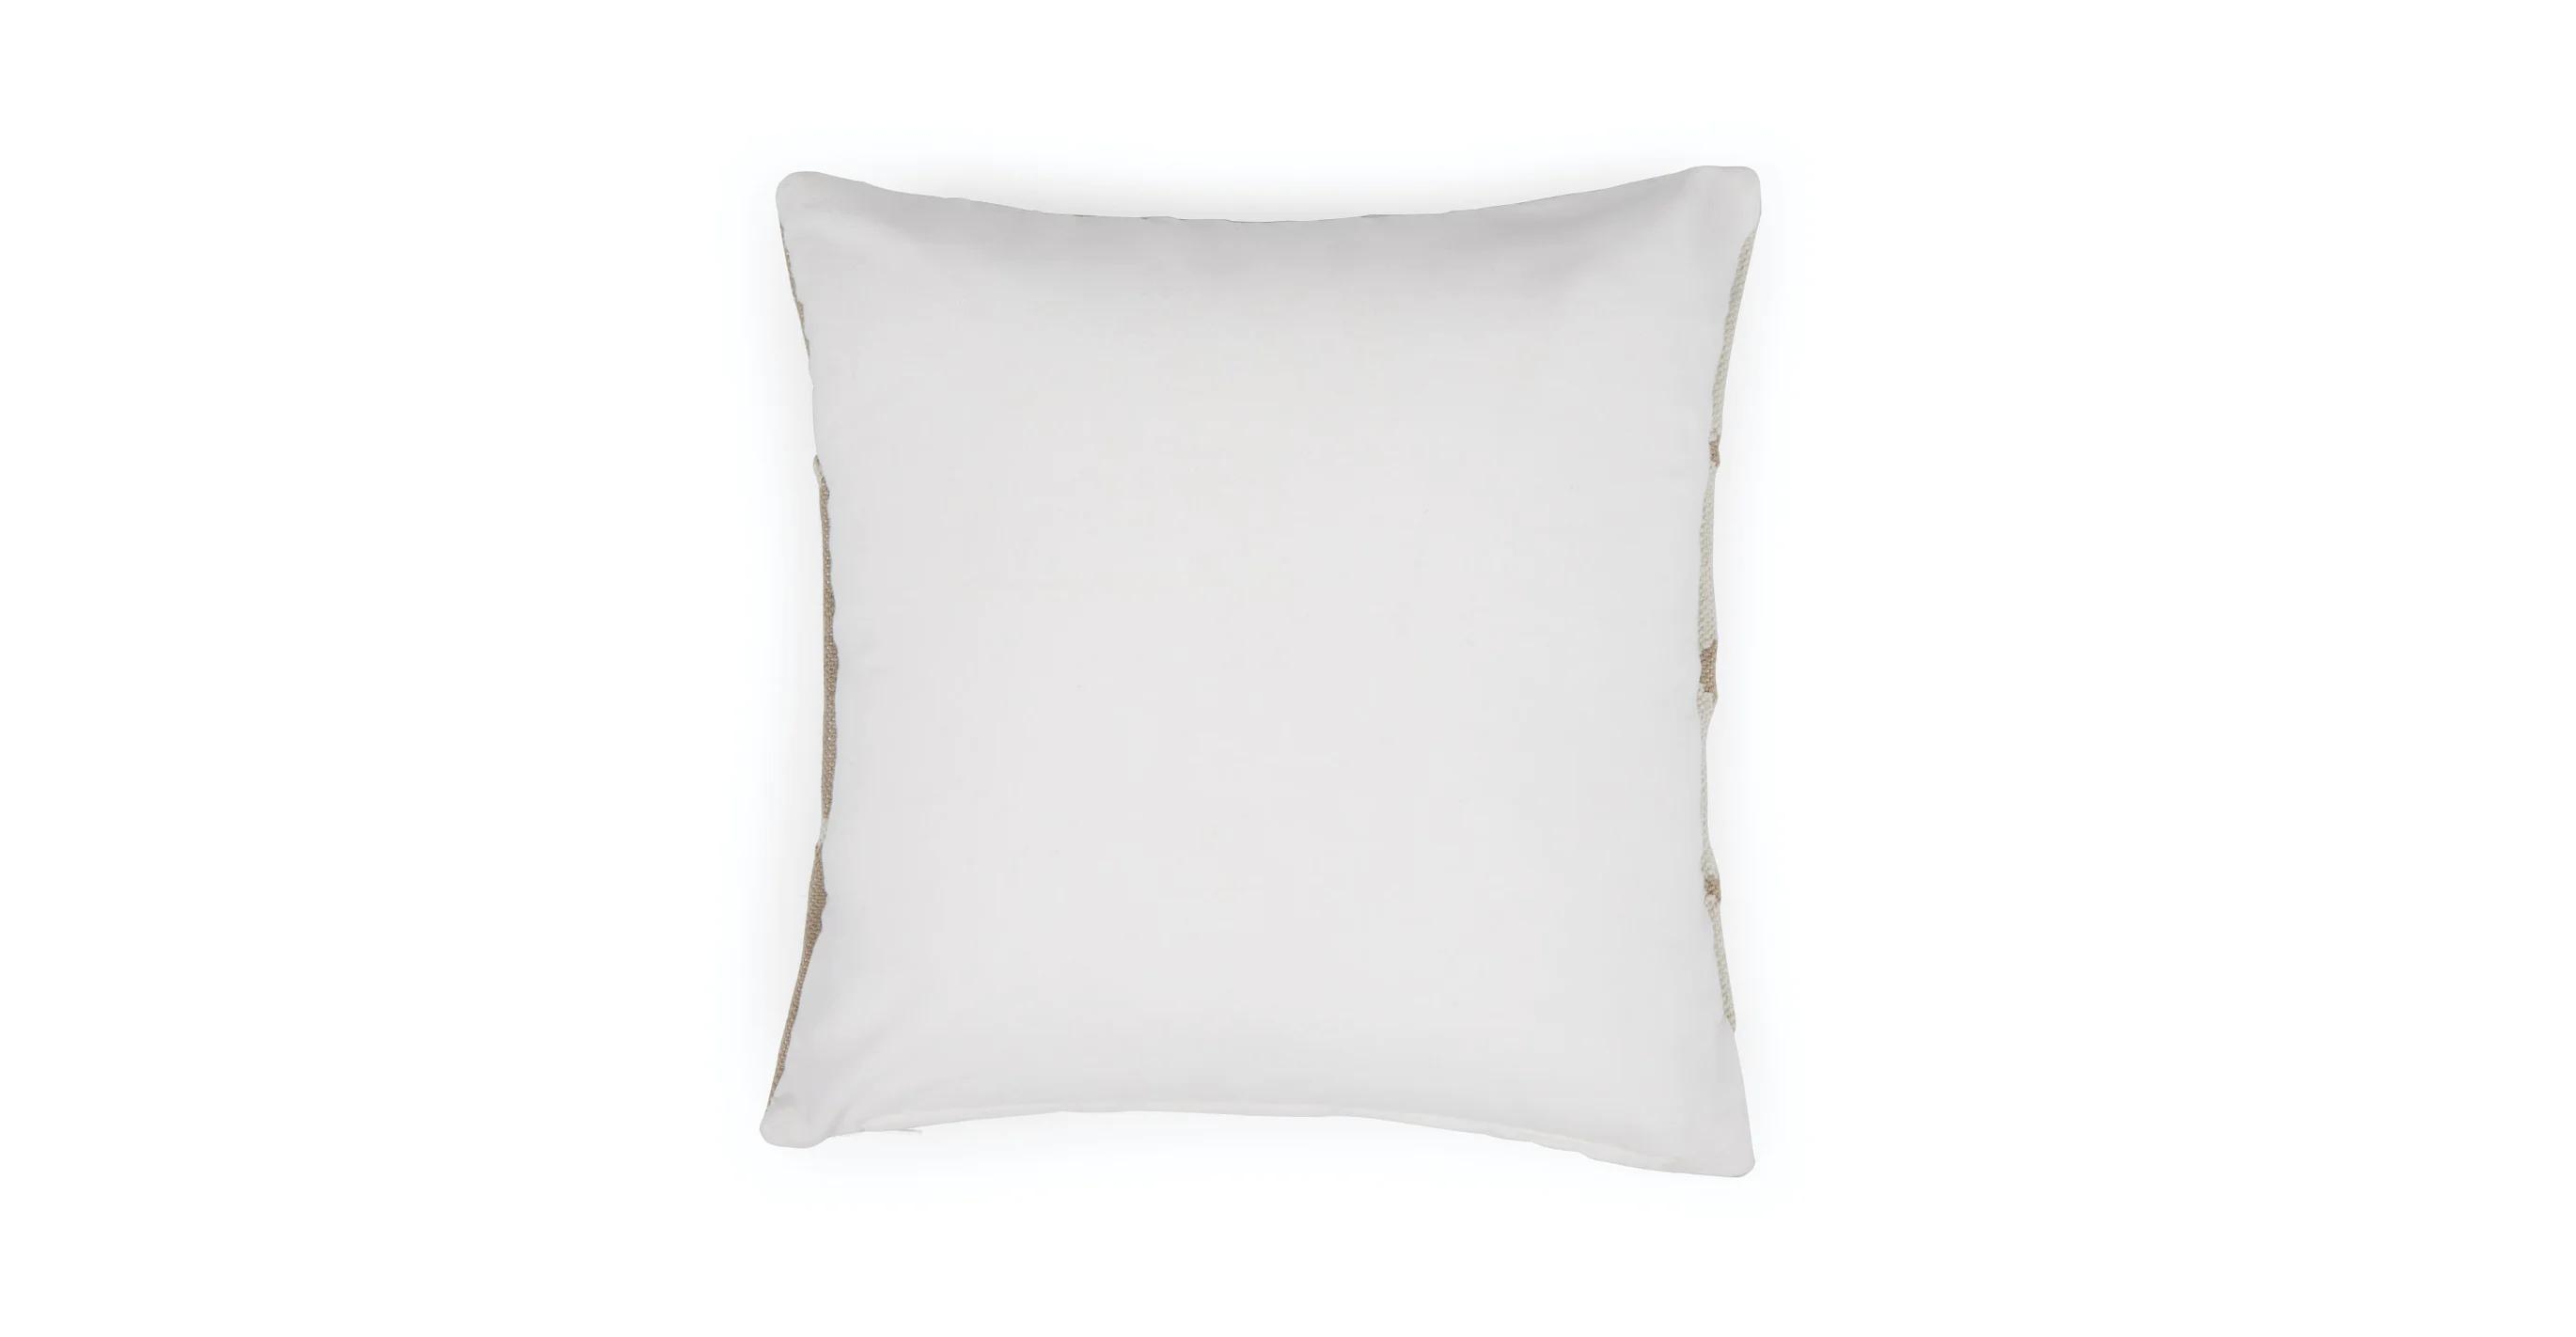 Sanka Sandstorm Outdoor Pillow - Image 2